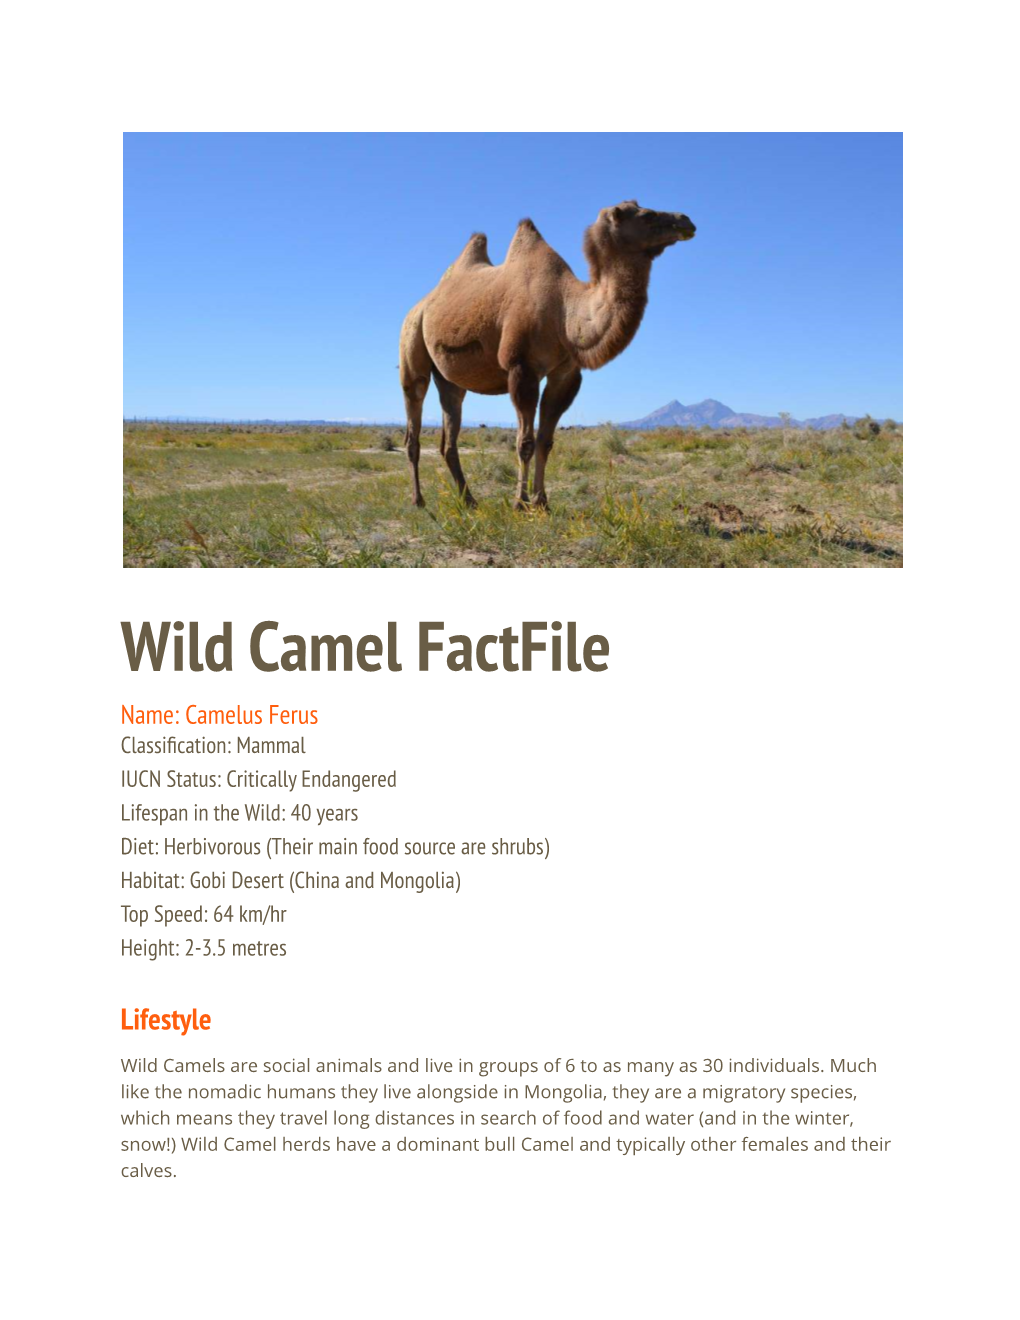 Wild Camel Factfile